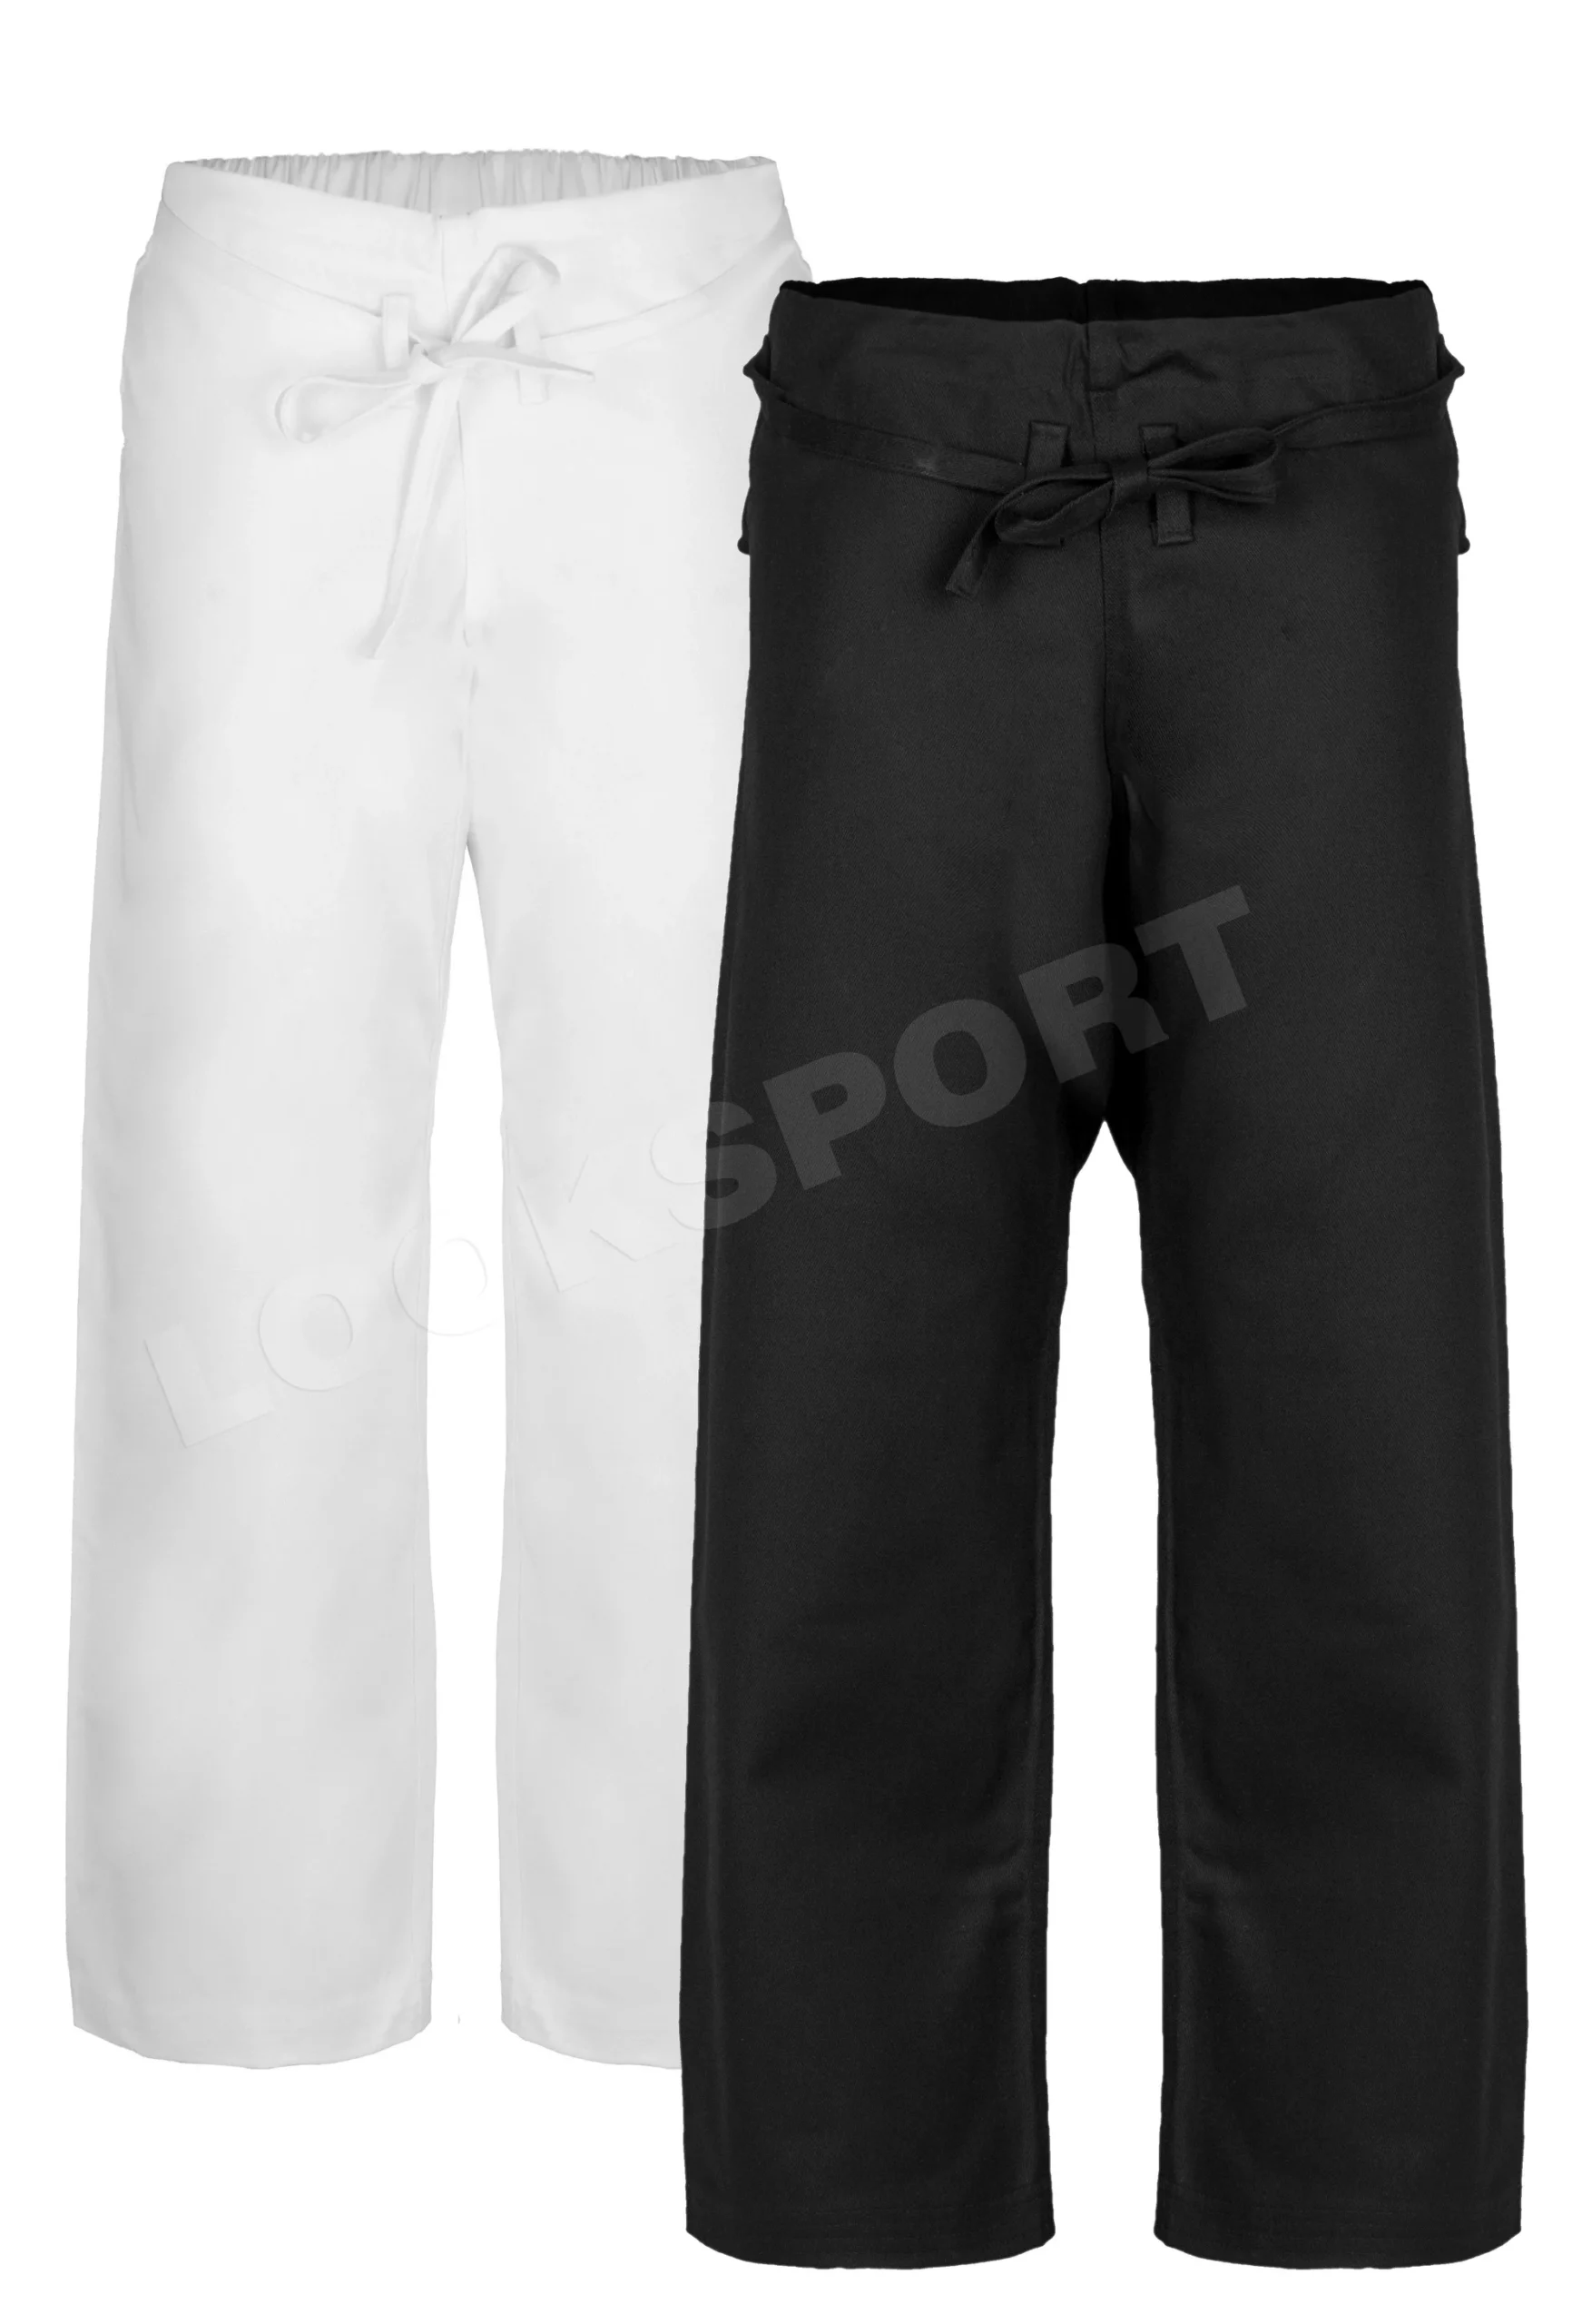 Spodnie karate professional 300g